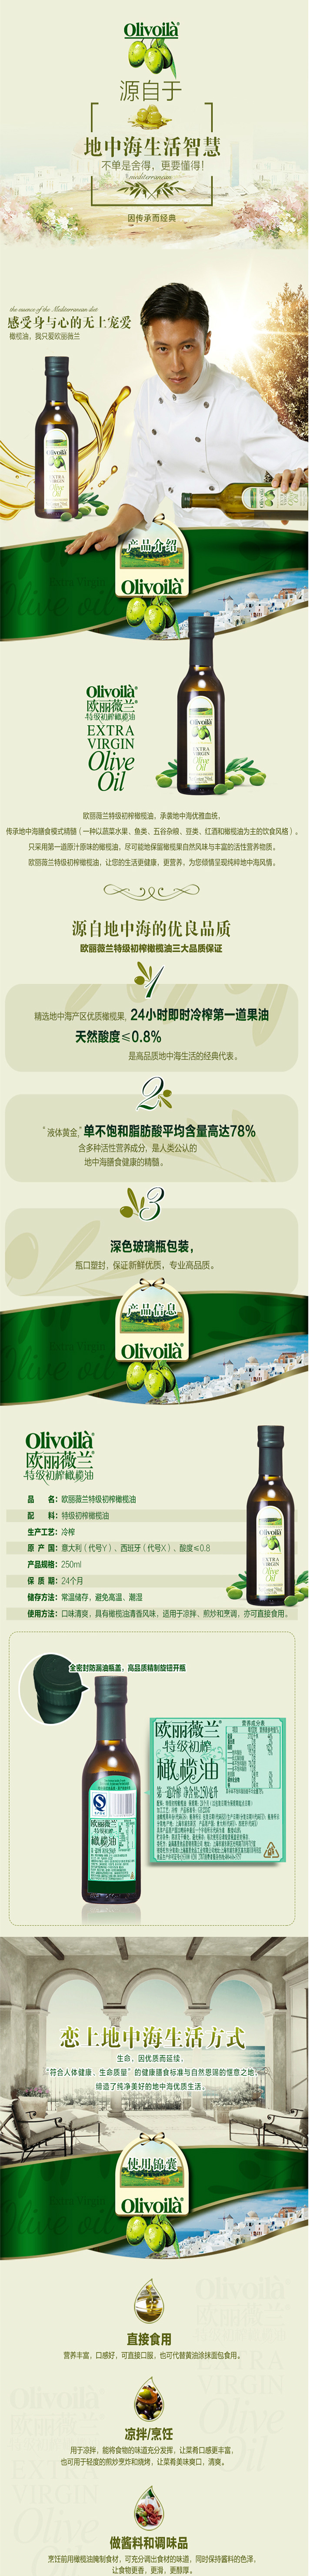 欧丽薇兰 特级初榨橄榄油250ml/瓶 健康食用油  包邮